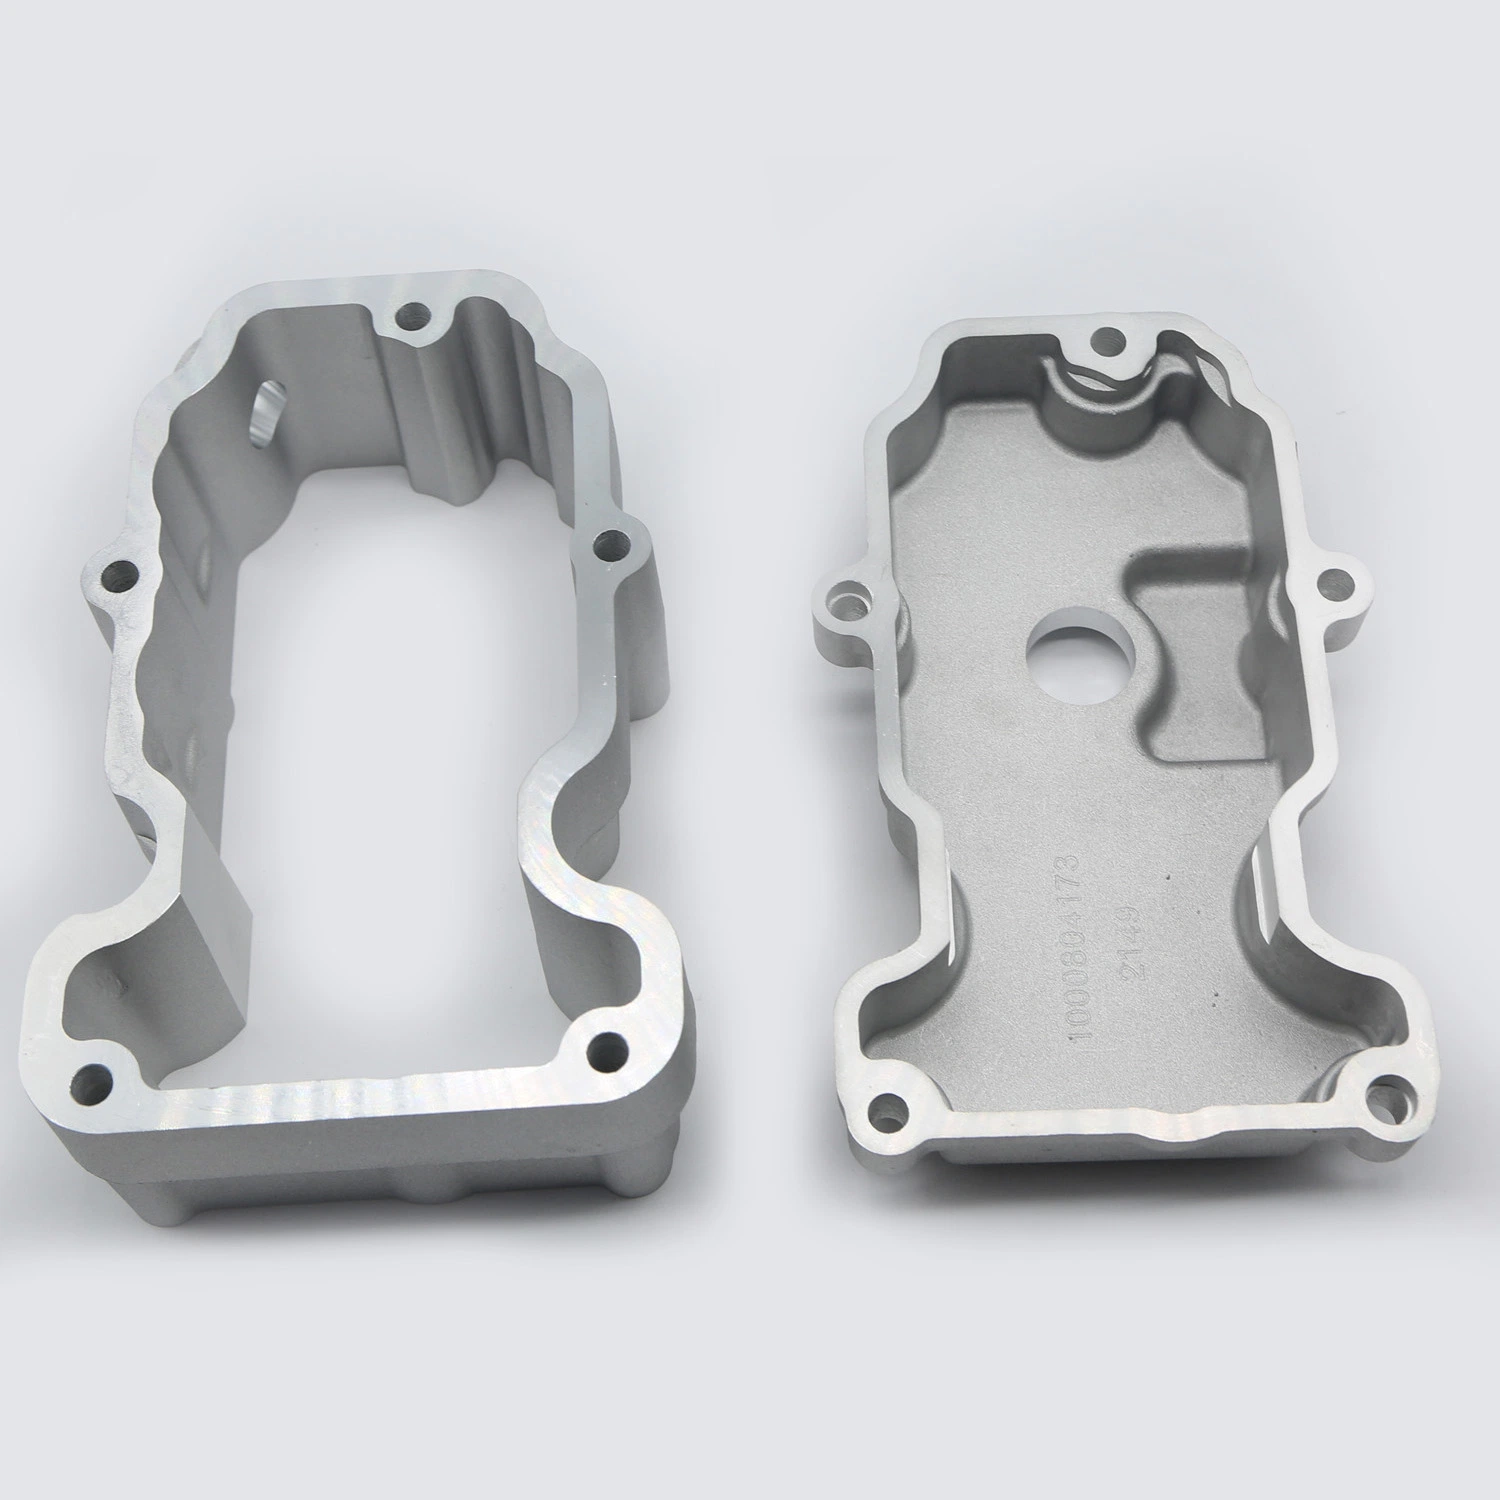 Liga de alumínio de fundição de moldes Auto partes separadas de alumínio personalizado fundição de moldes de alumínio Peças acessórios para bicicletas de alta precisão de alta qualidade